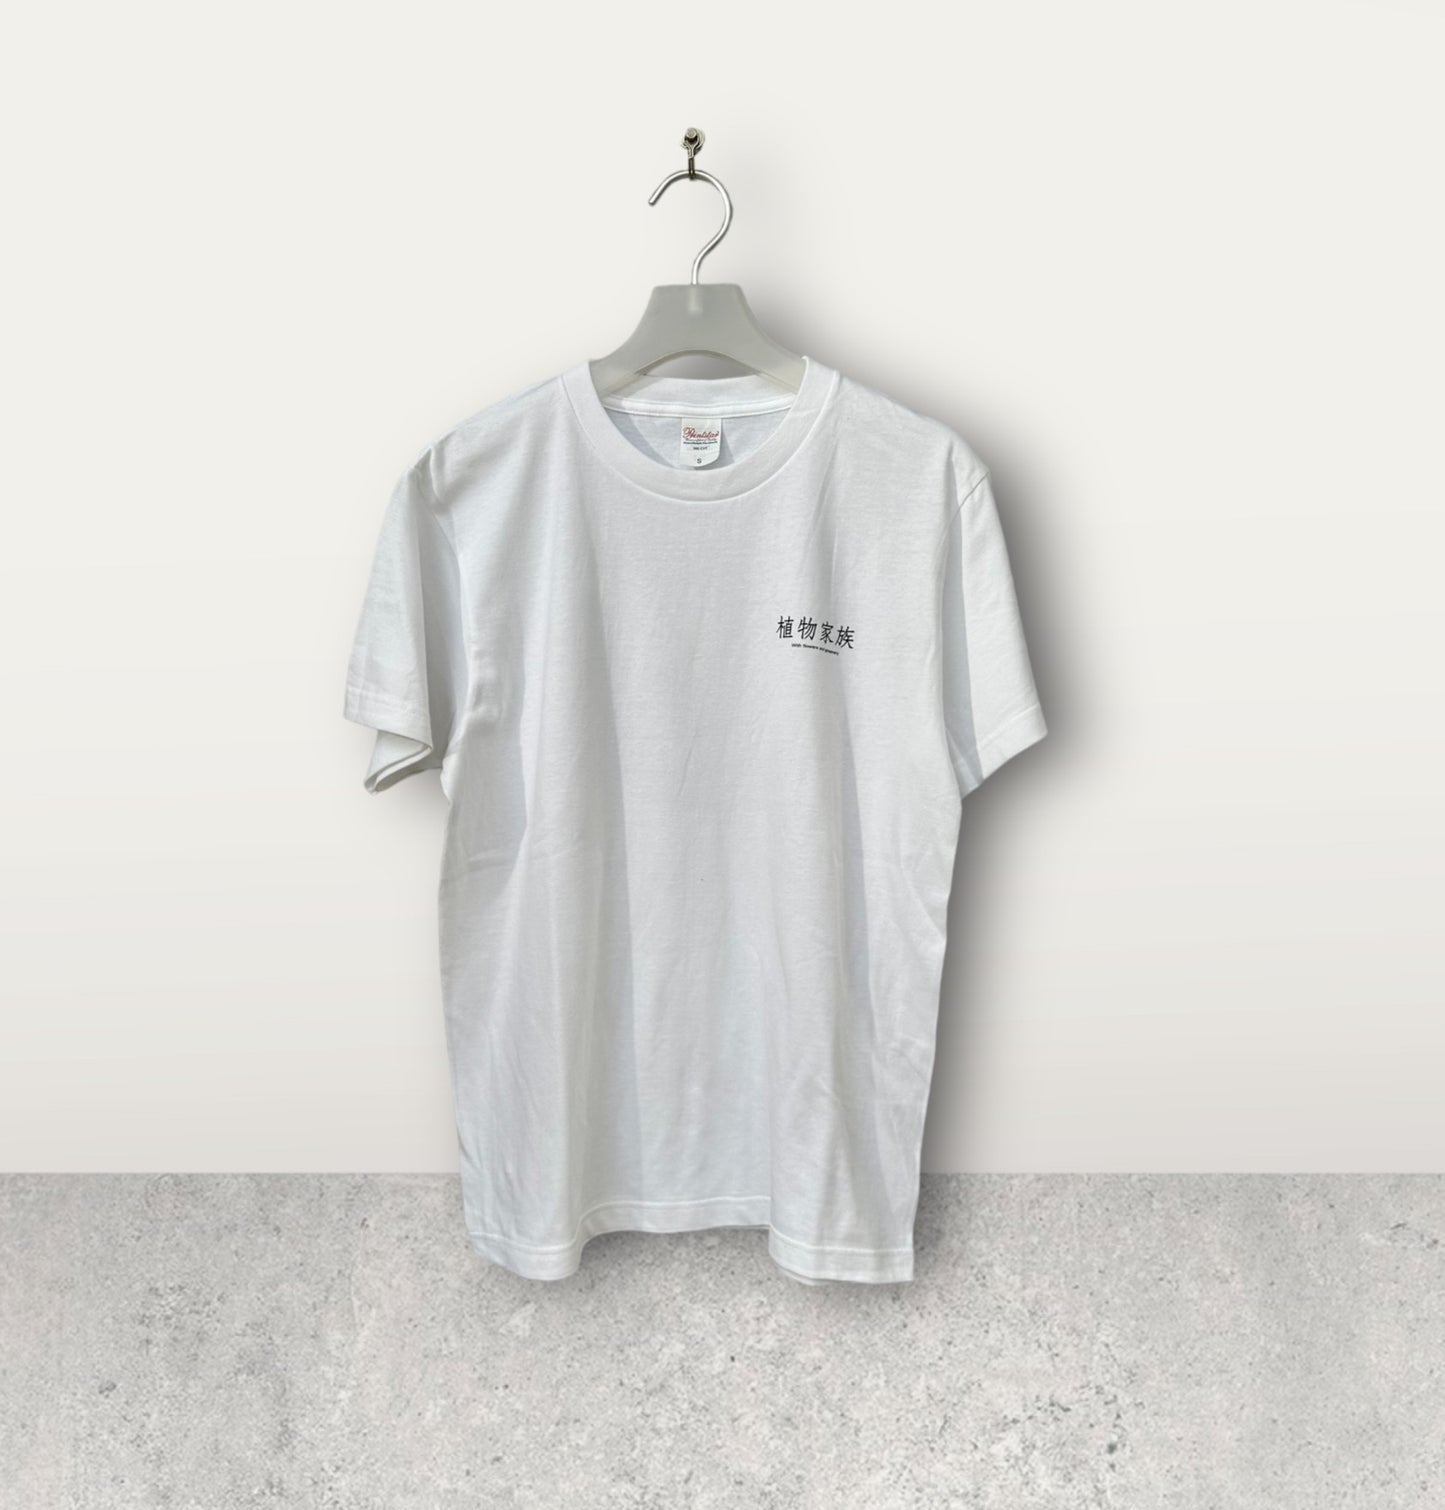 オリジナルTシャツ(白) サボテン 黒王丸